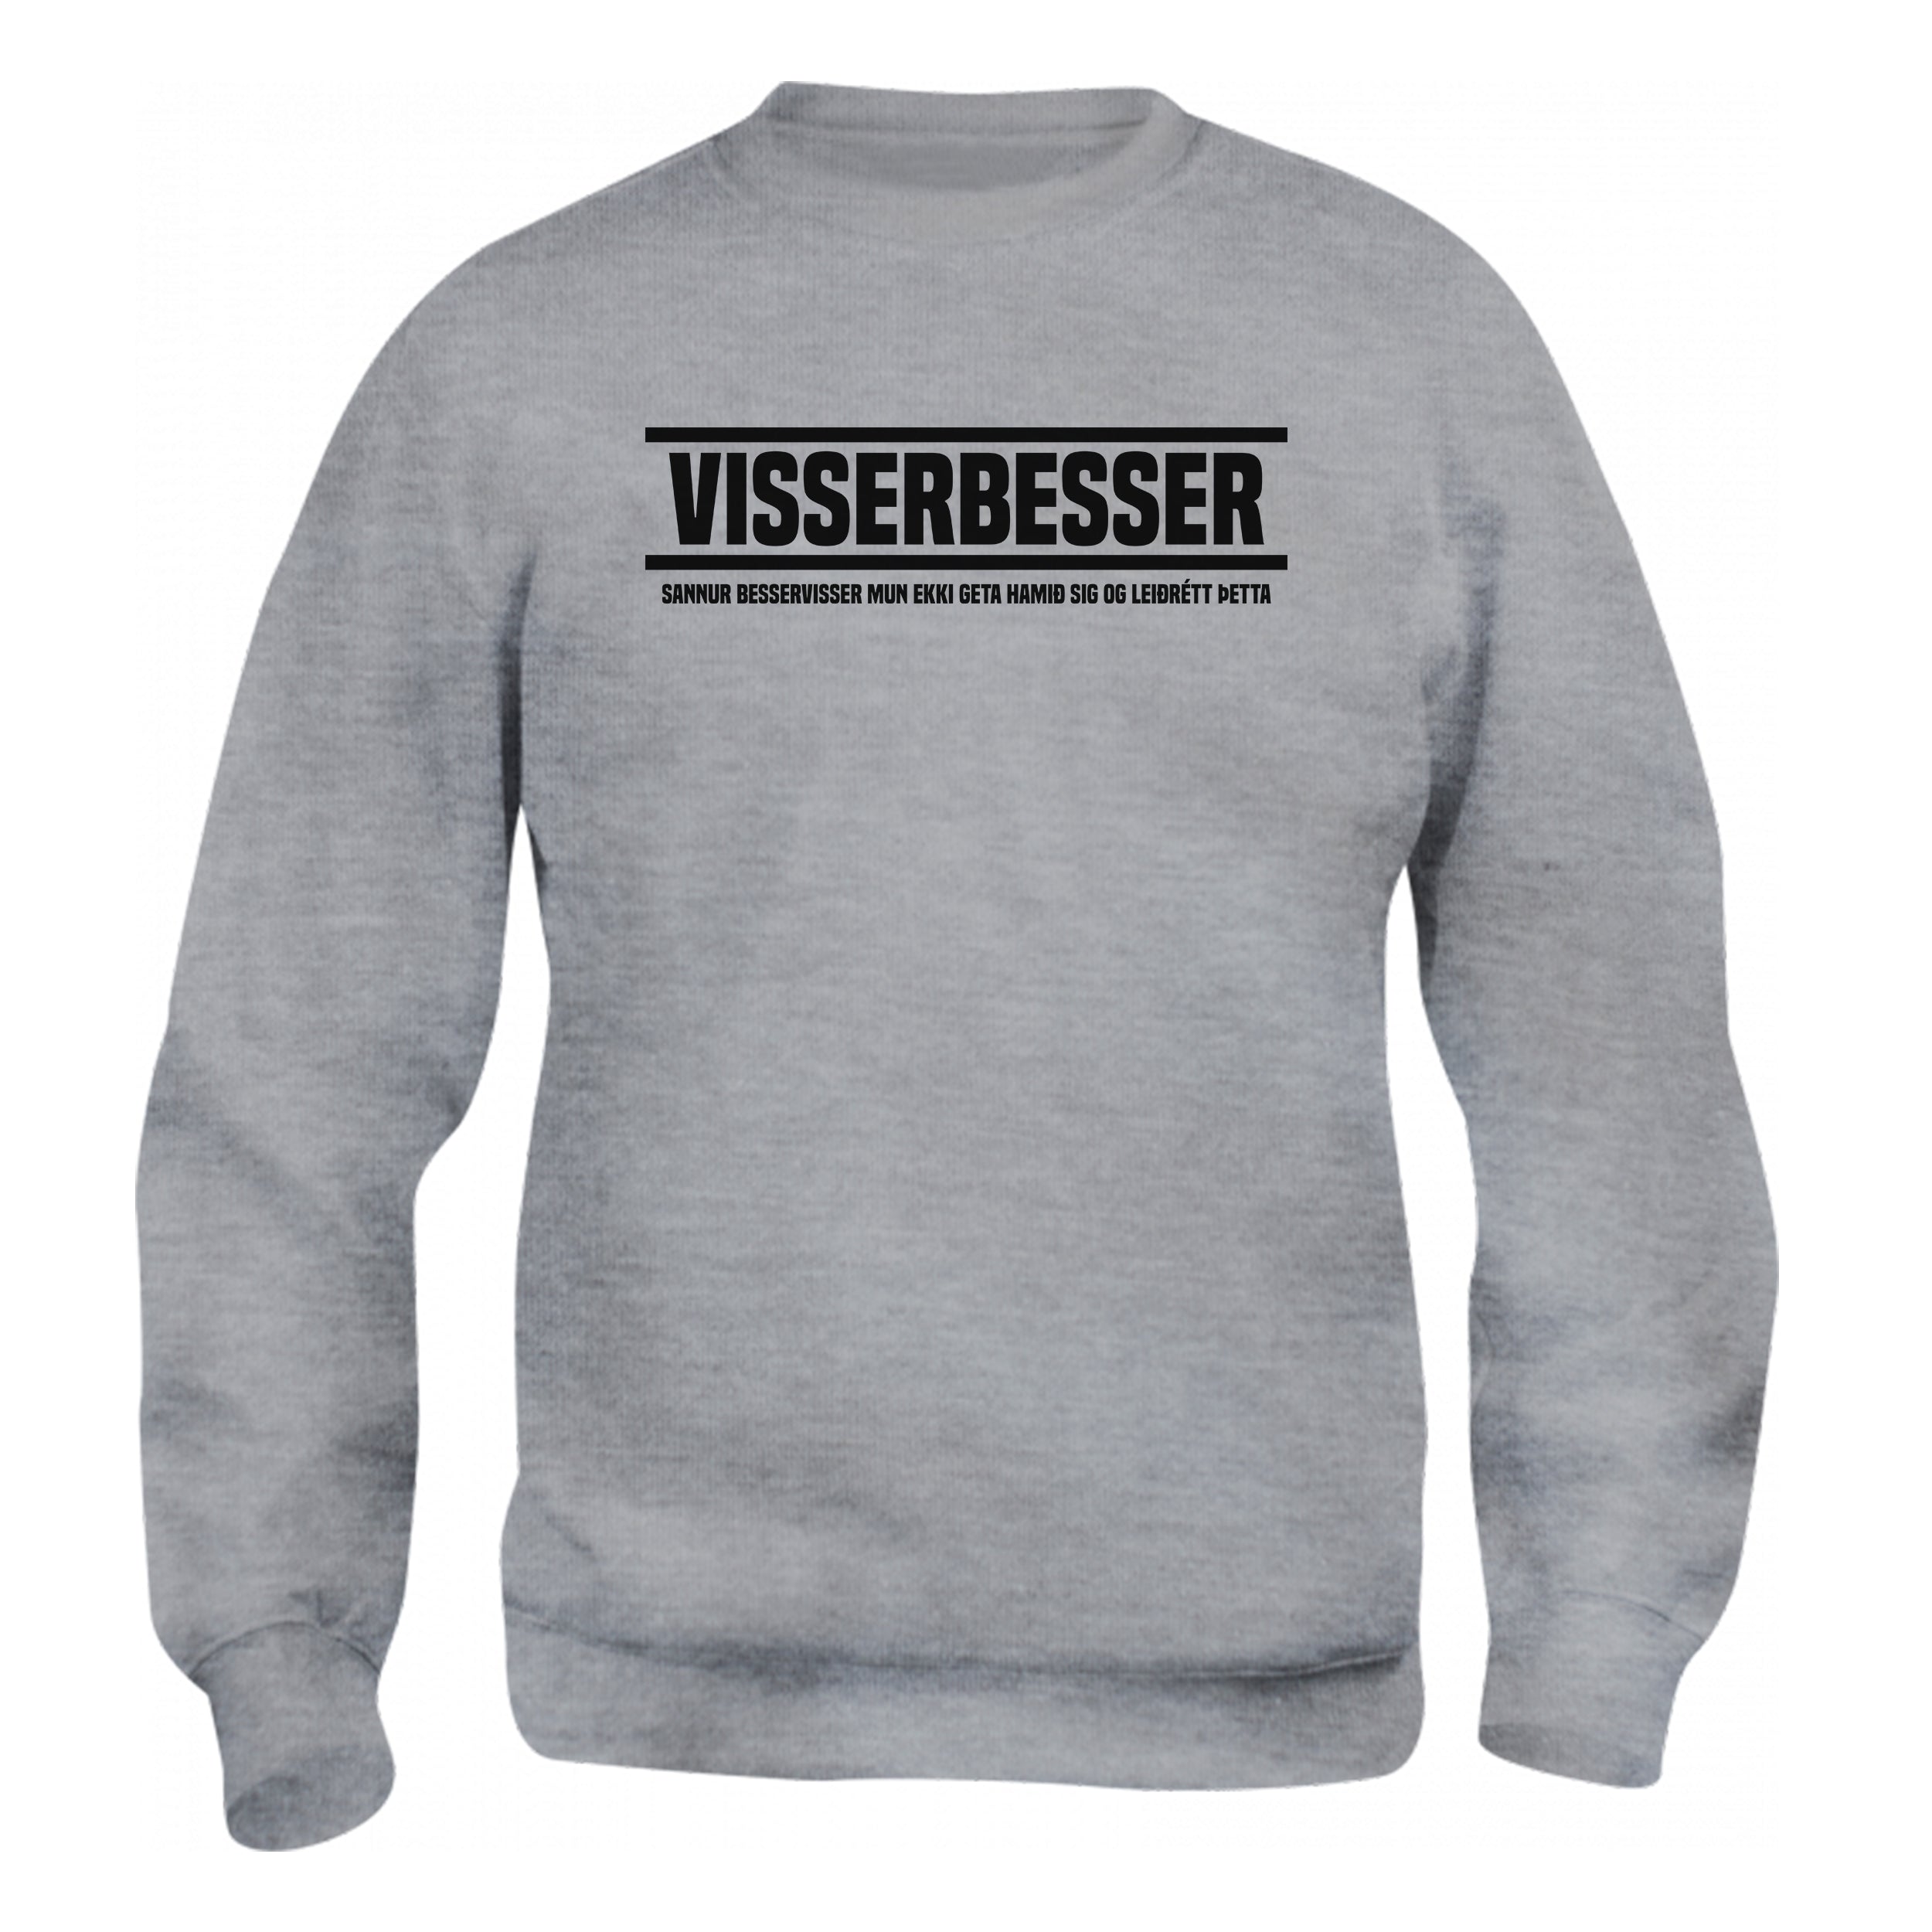 VISSERBESSER - Peysa - Grá